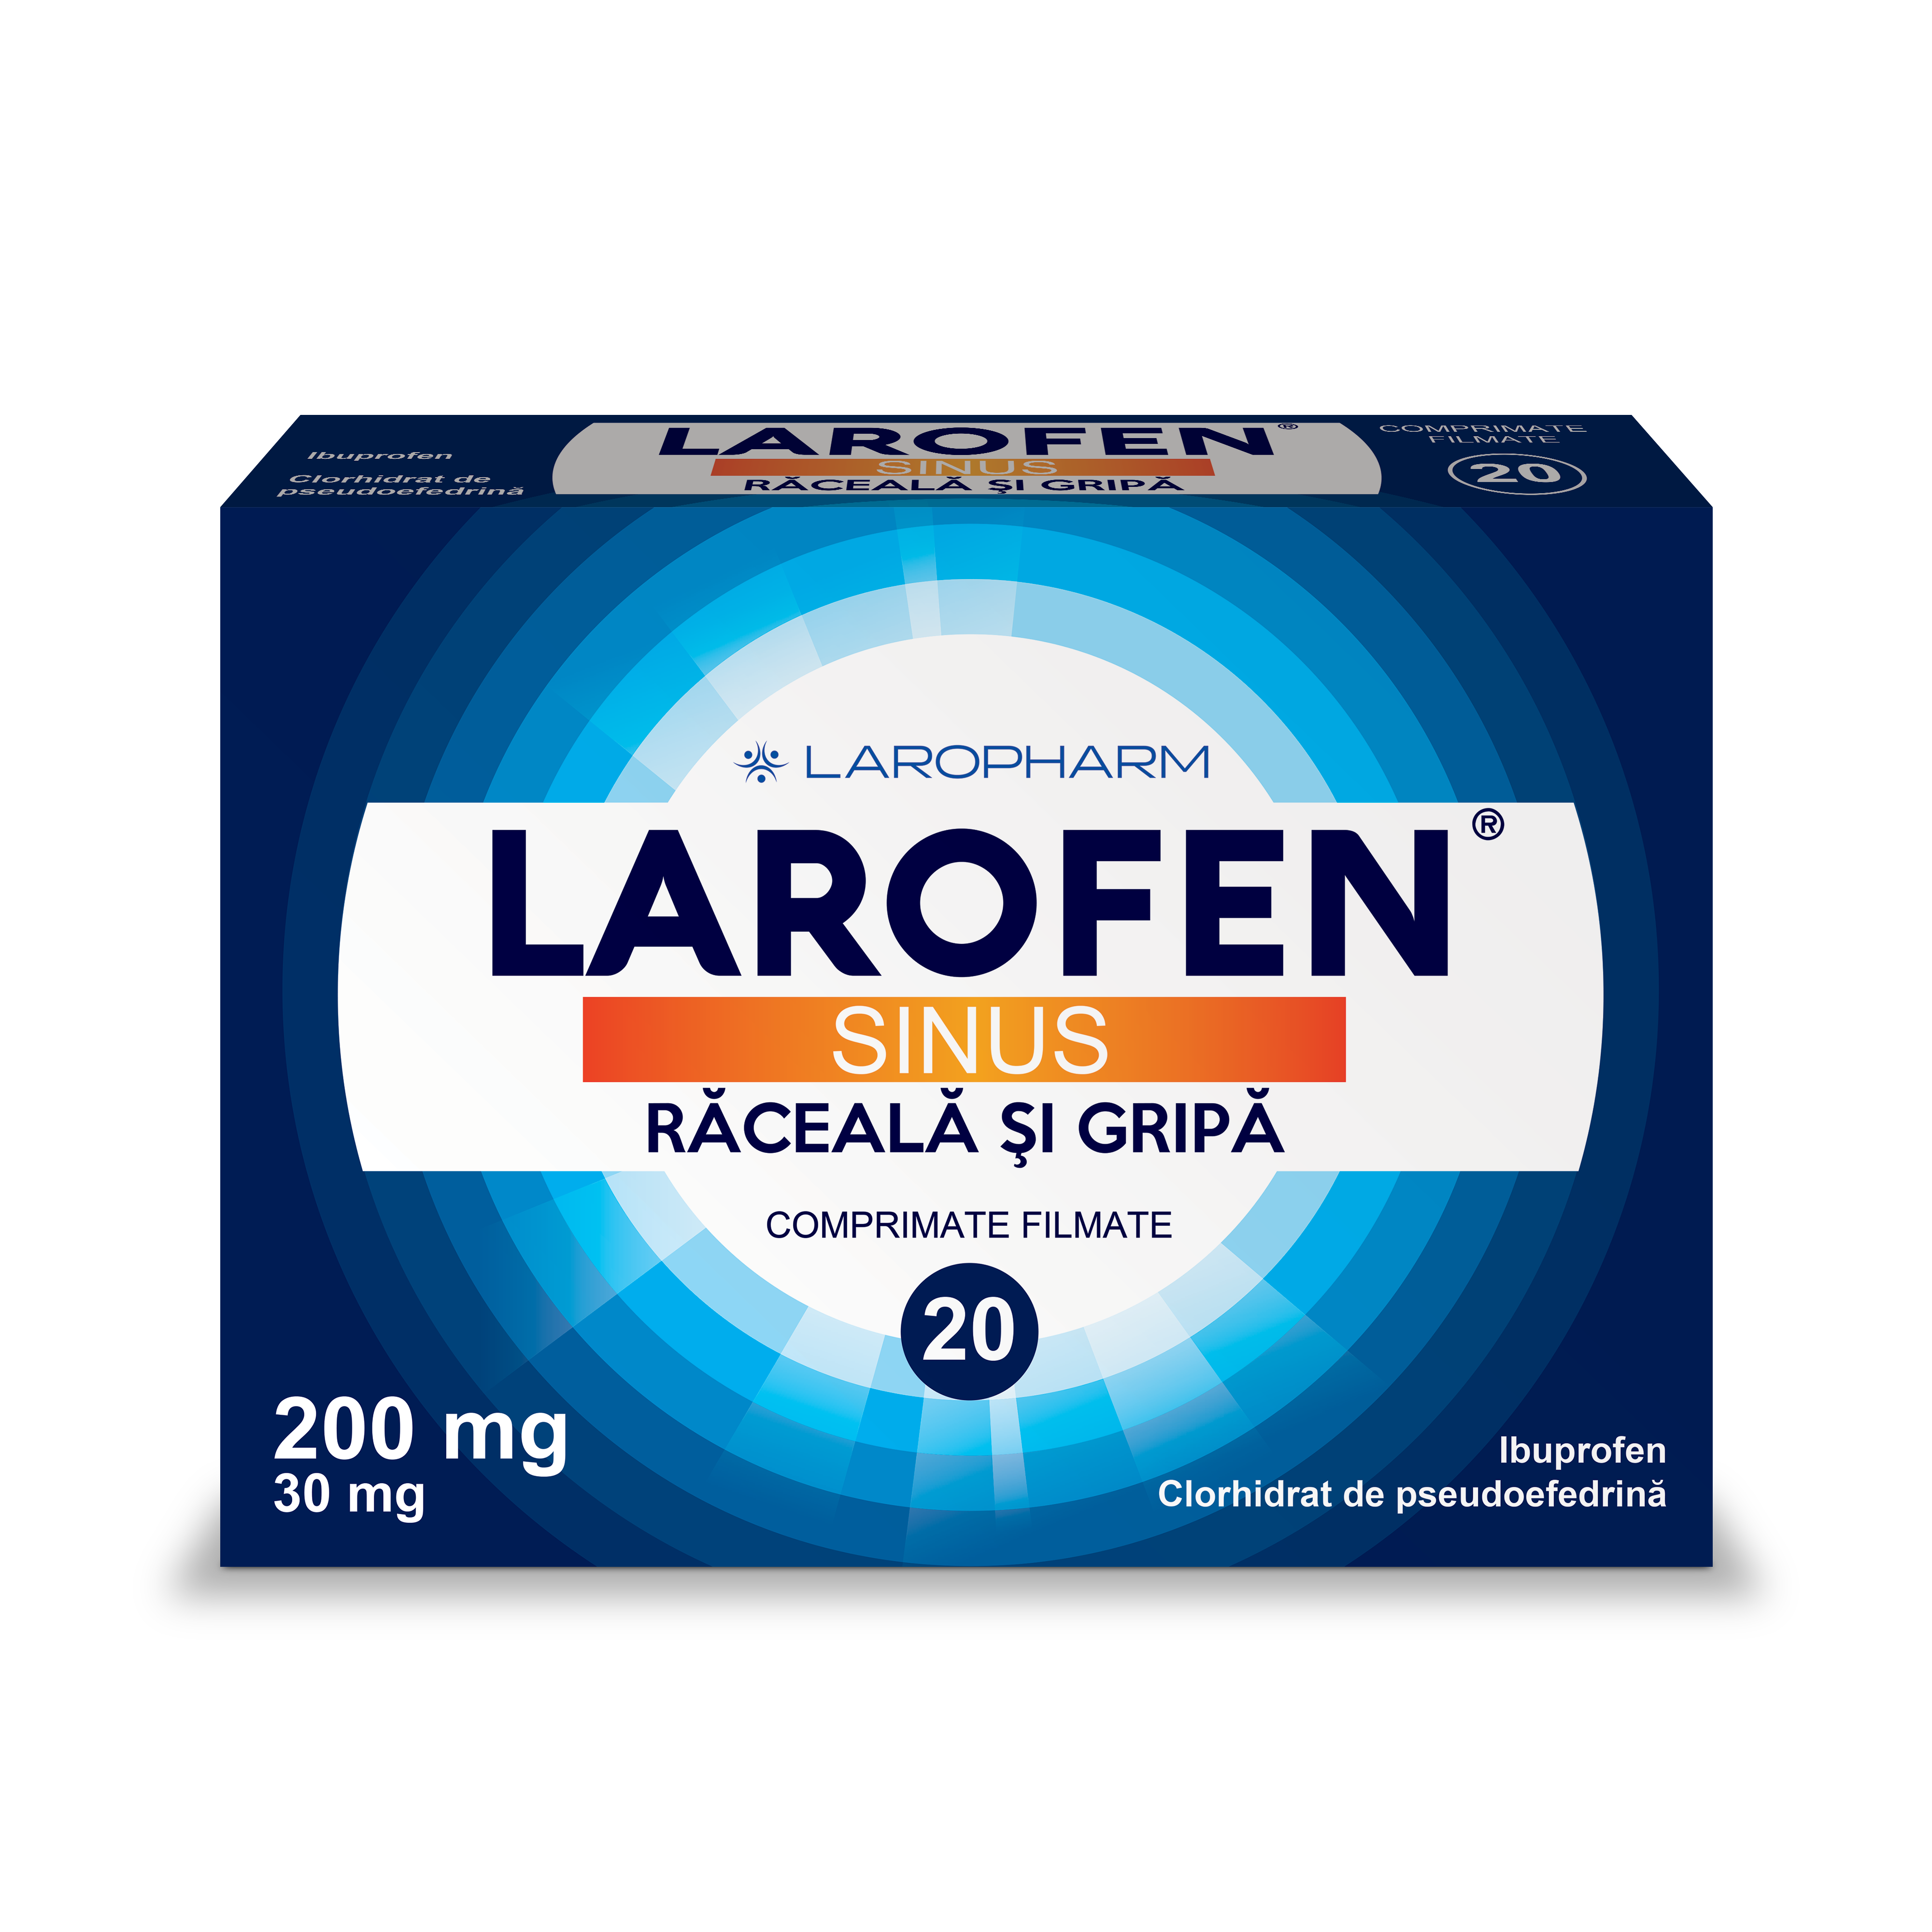 Raceala si gripa - Larofen Plus 20 de comprimate filmate, sinapis.ro